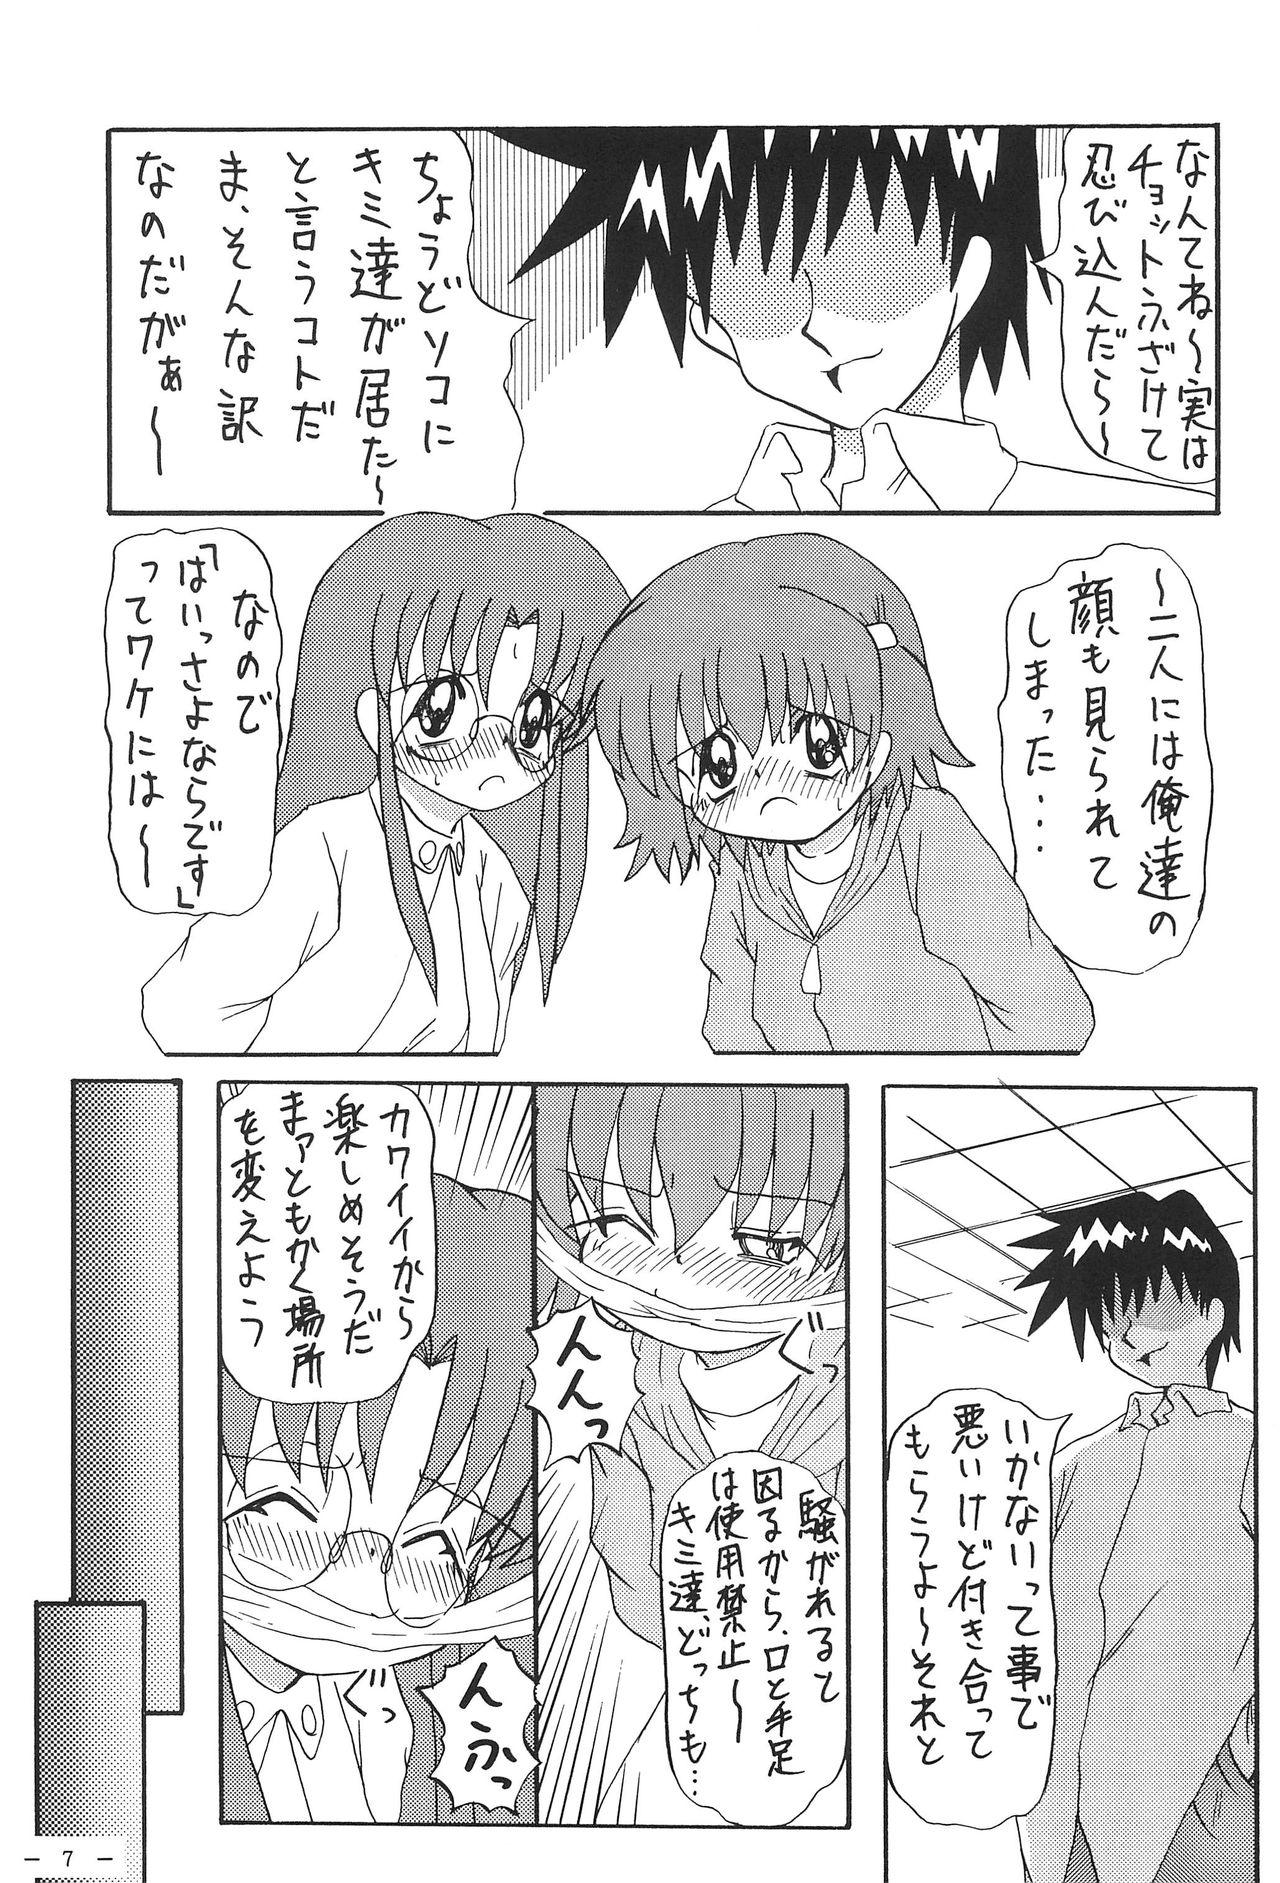 Spreading Roko to Kana no Houkago no Kiki - Hamtaro Asshole - Page 9